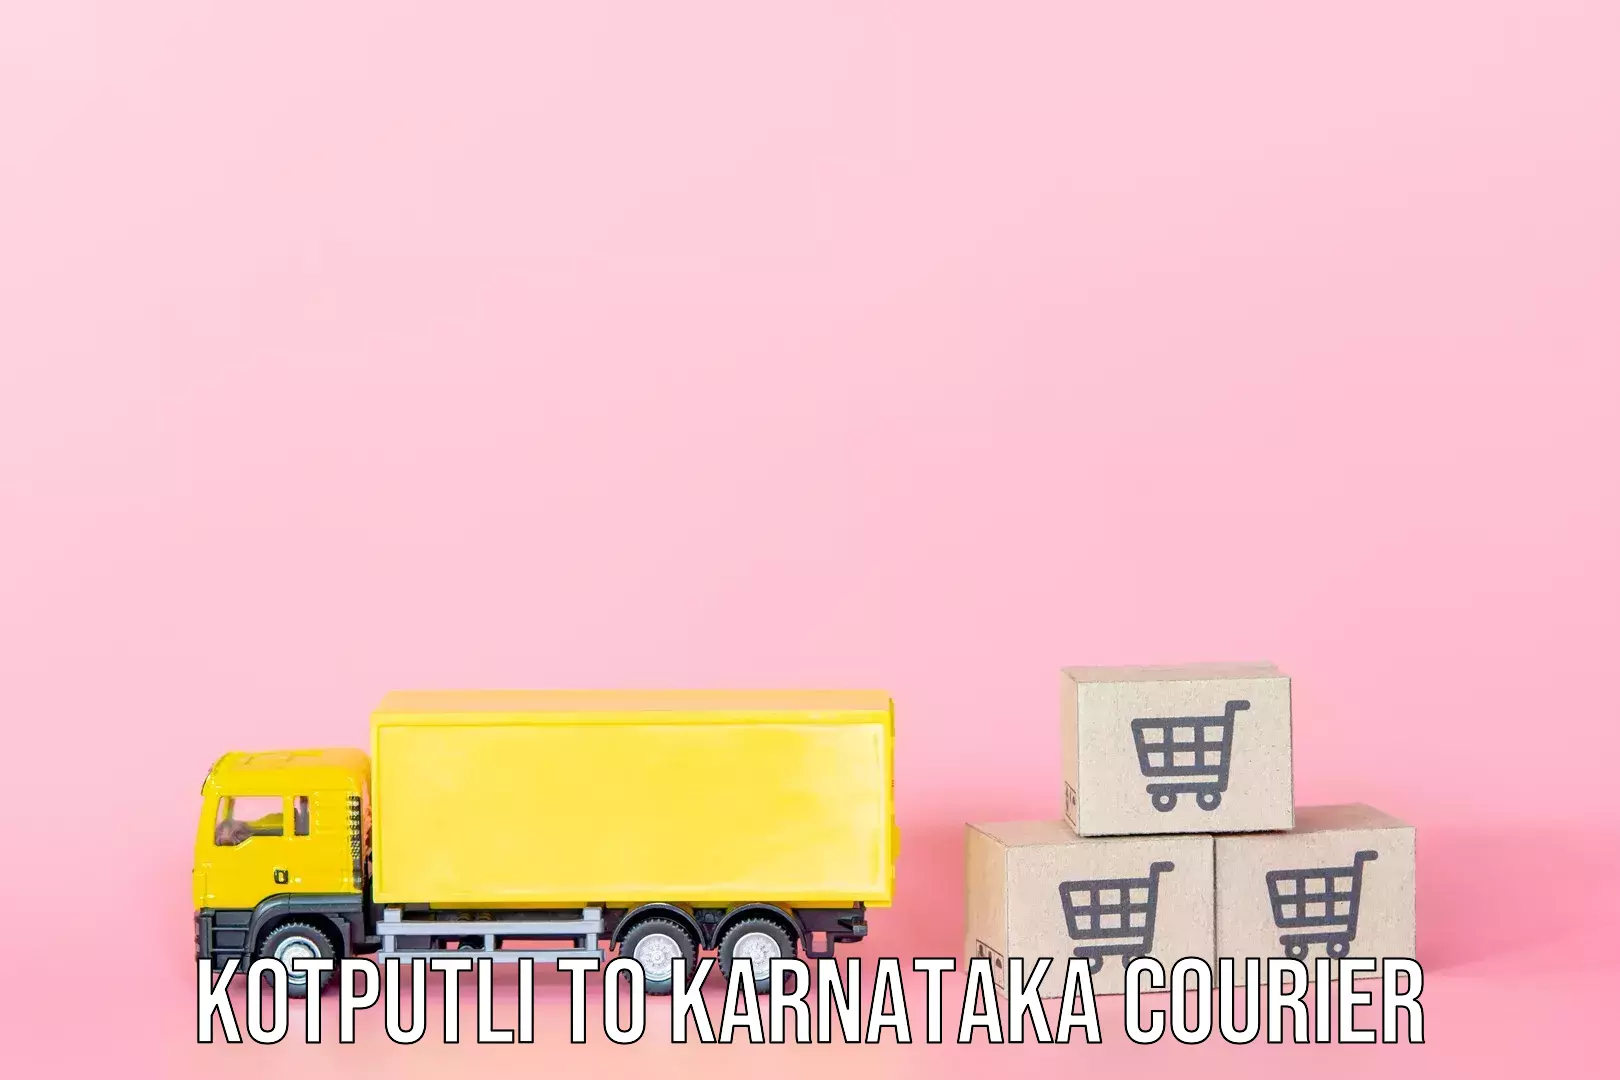 Quick baggage pickup Kotputli to Karnataka